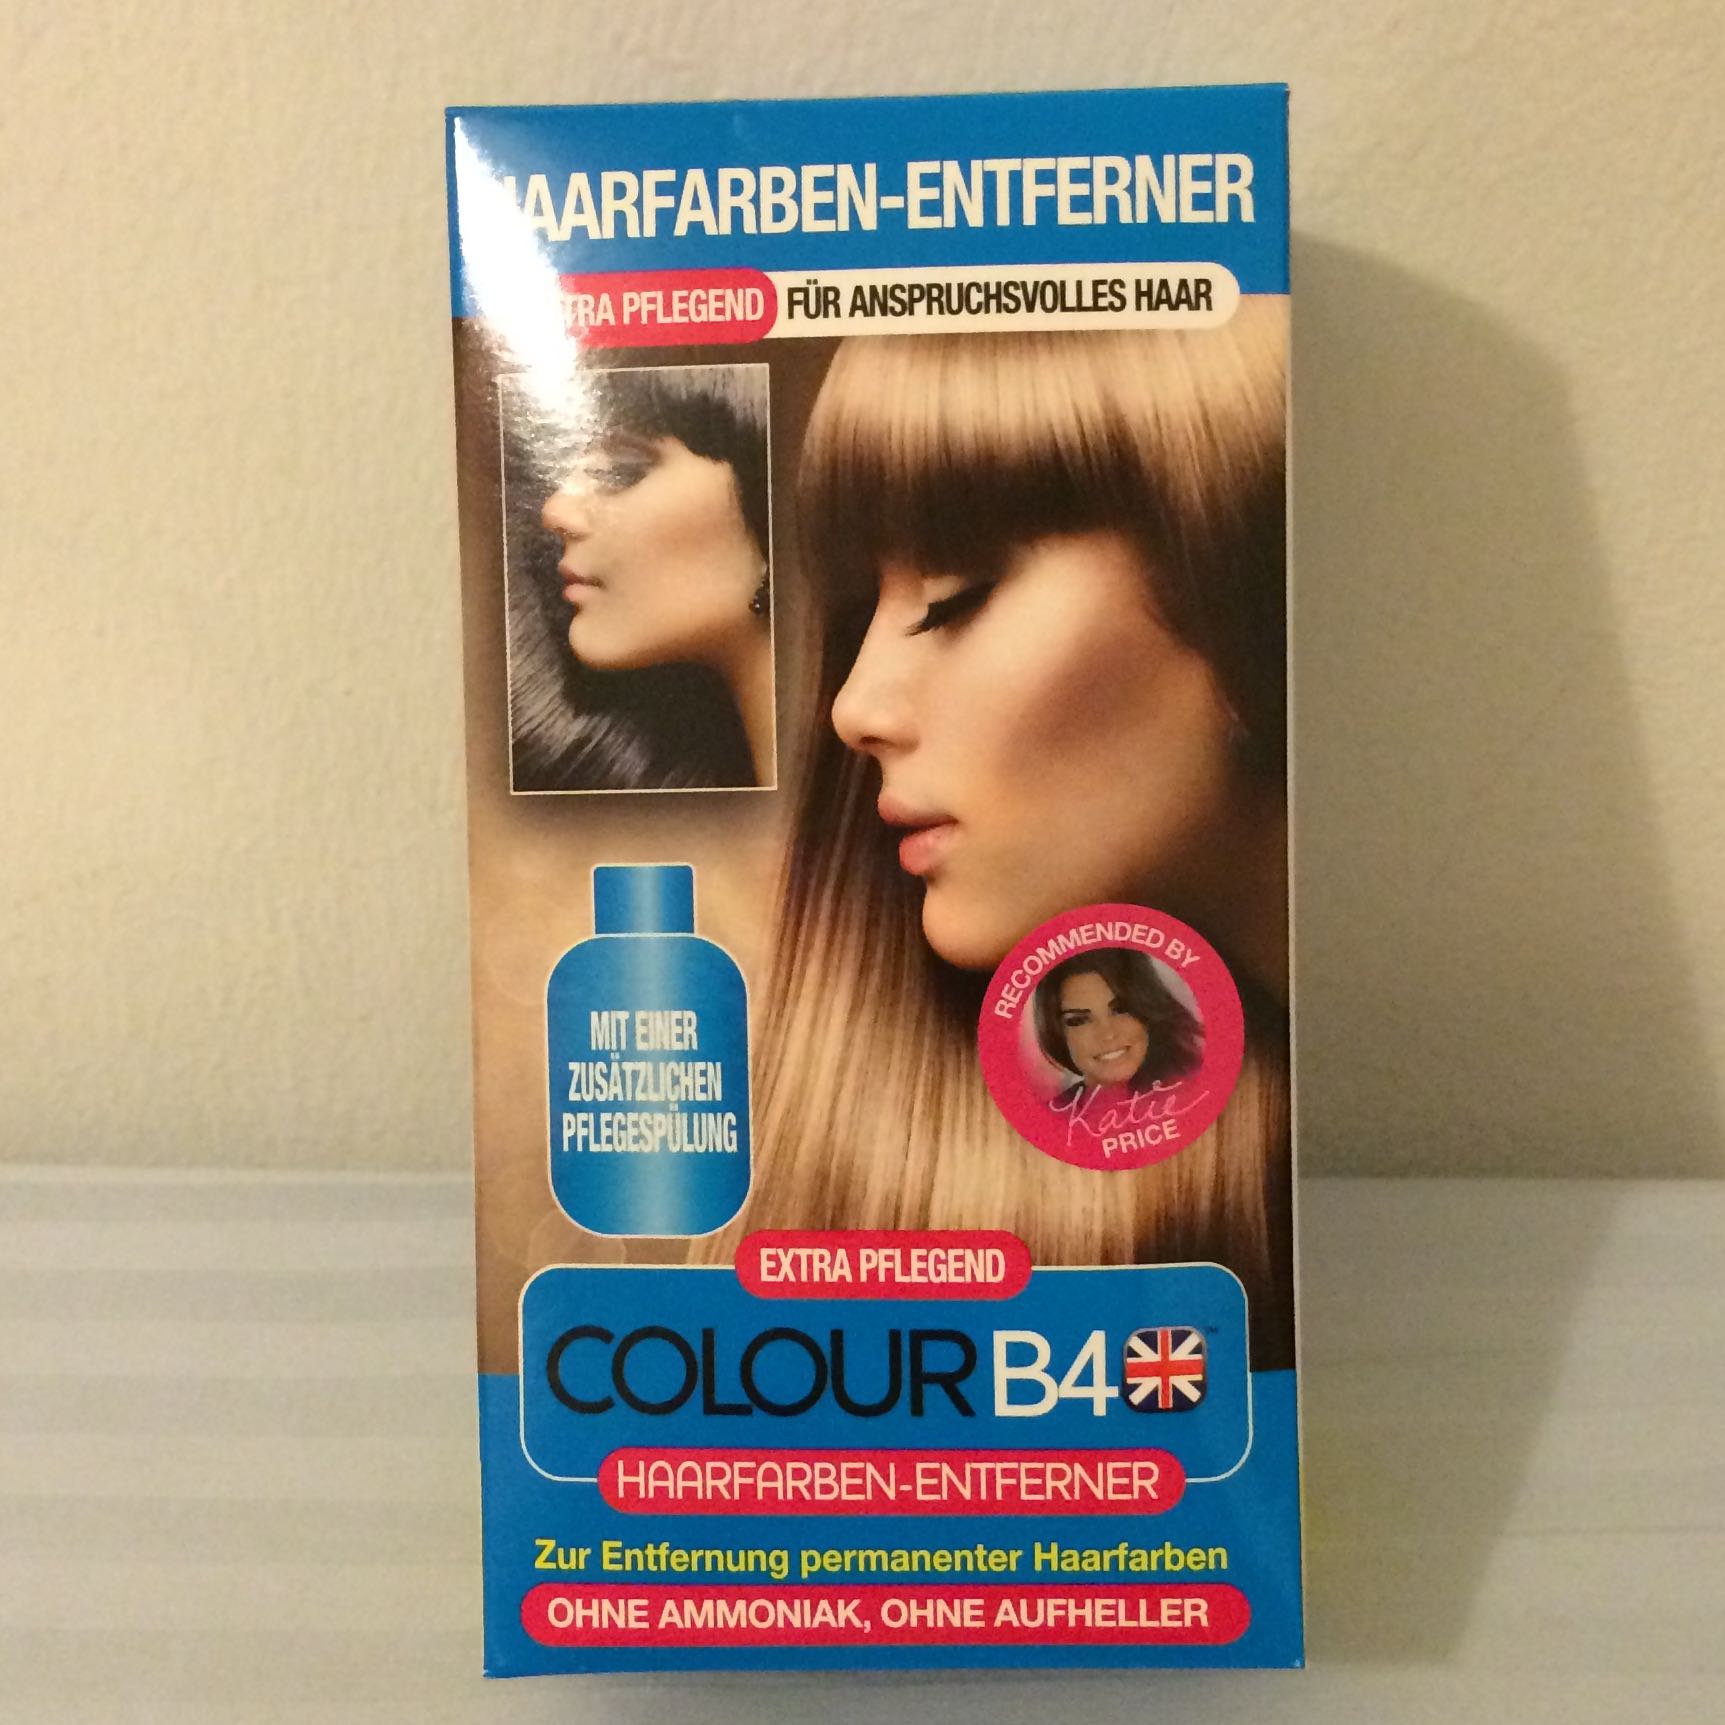 Haarfarben entferner von B4 funktioniert das Haare 